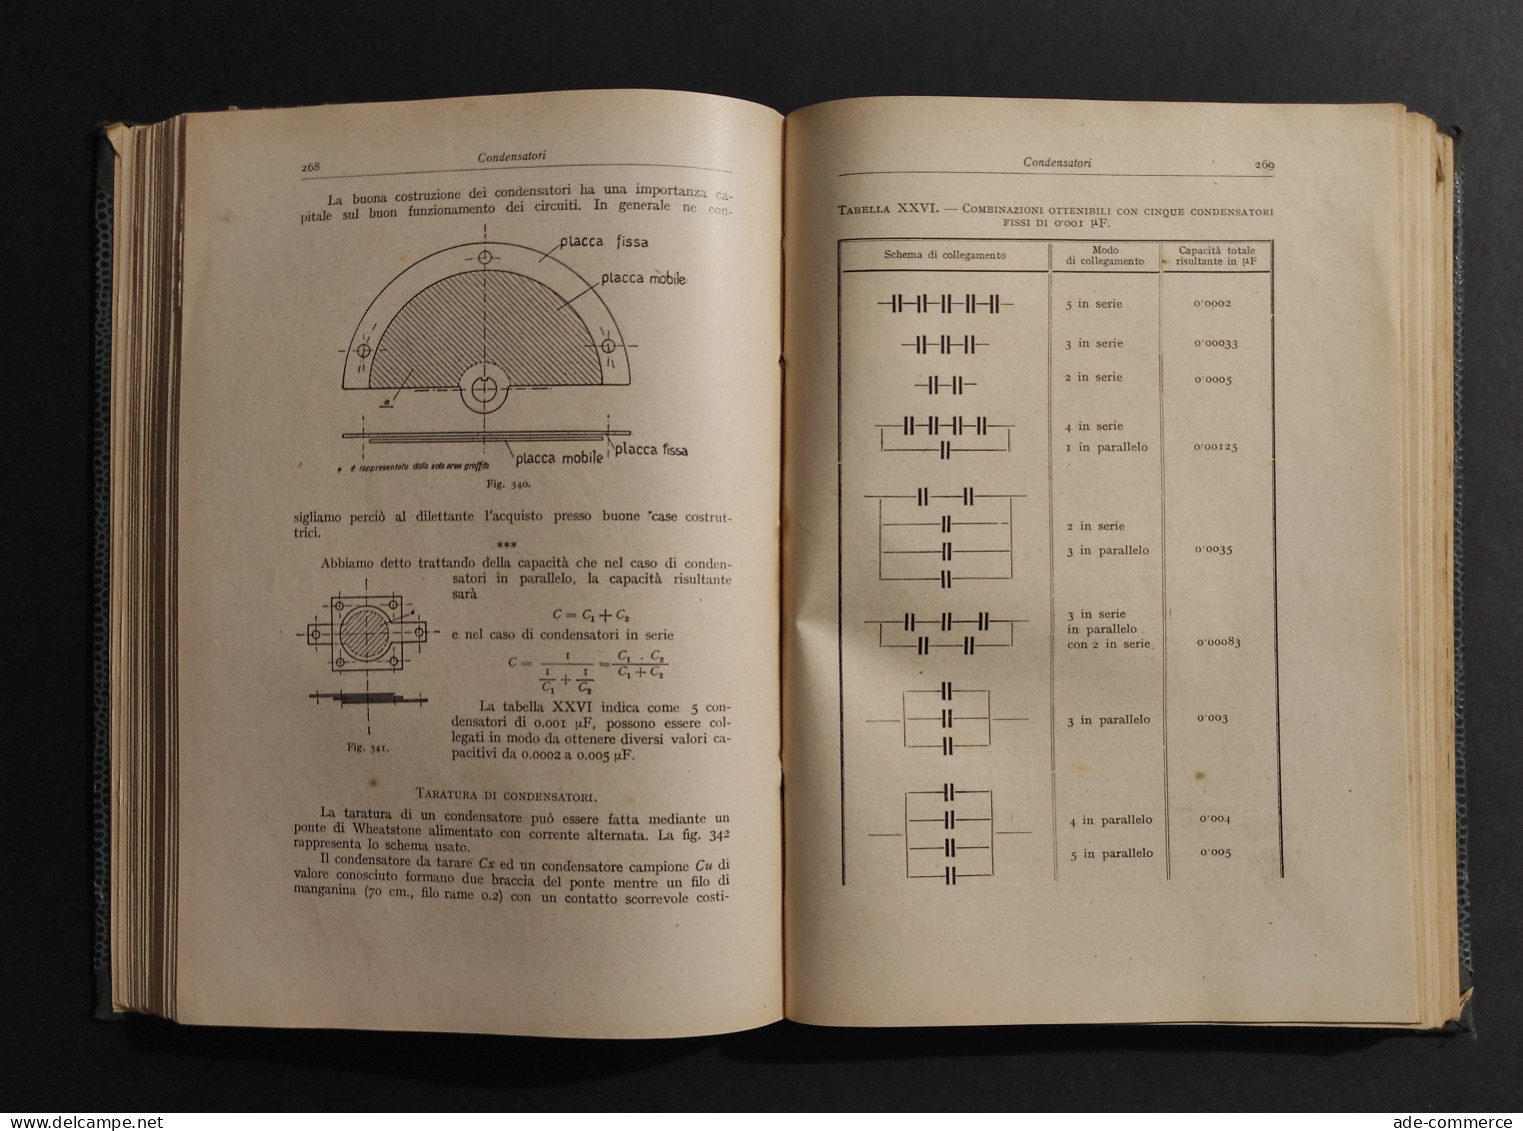 Radio Telegrafica Telefonica - E. Montù - Ed. Hoepli - 1929 - Matematica E Fisica